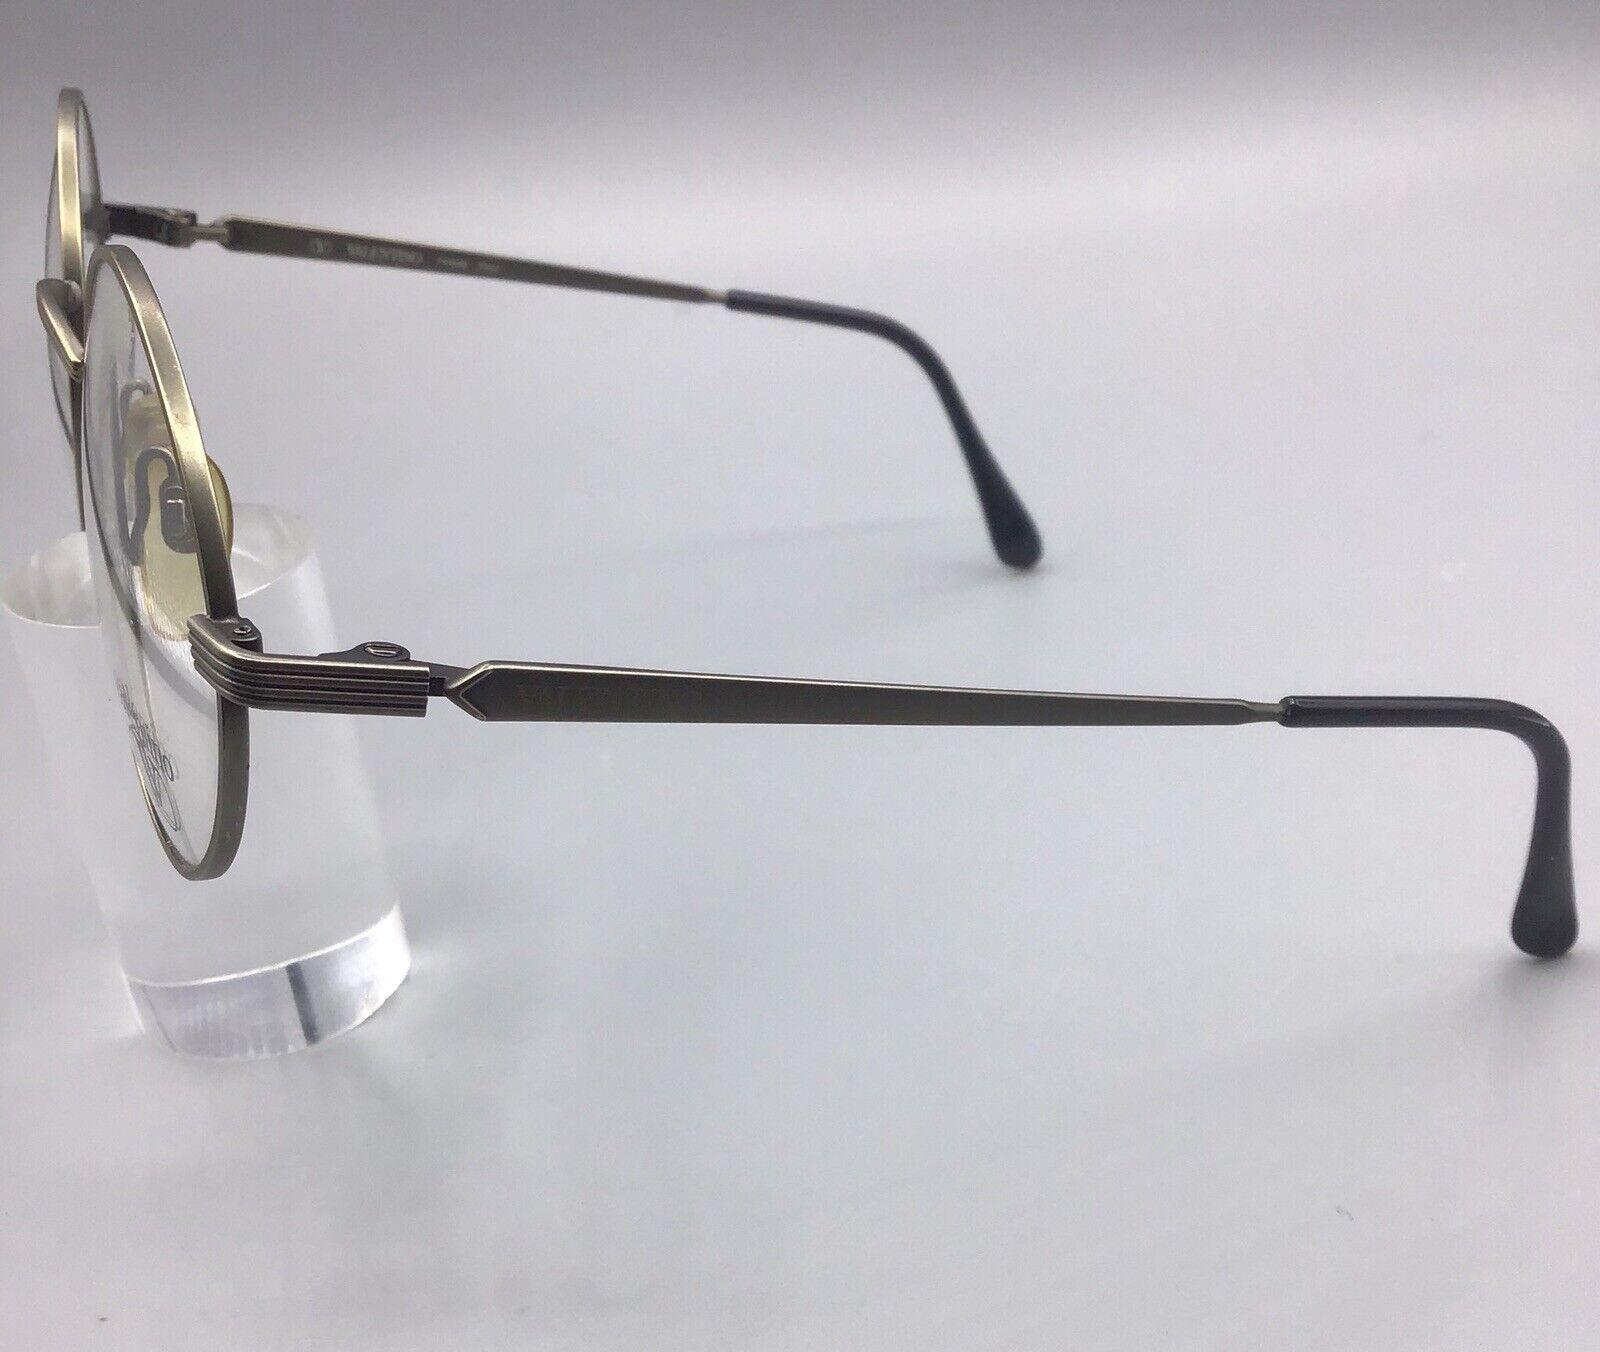 valentino occhiale vintage v389 1062 eyewear frame brillen lunettes